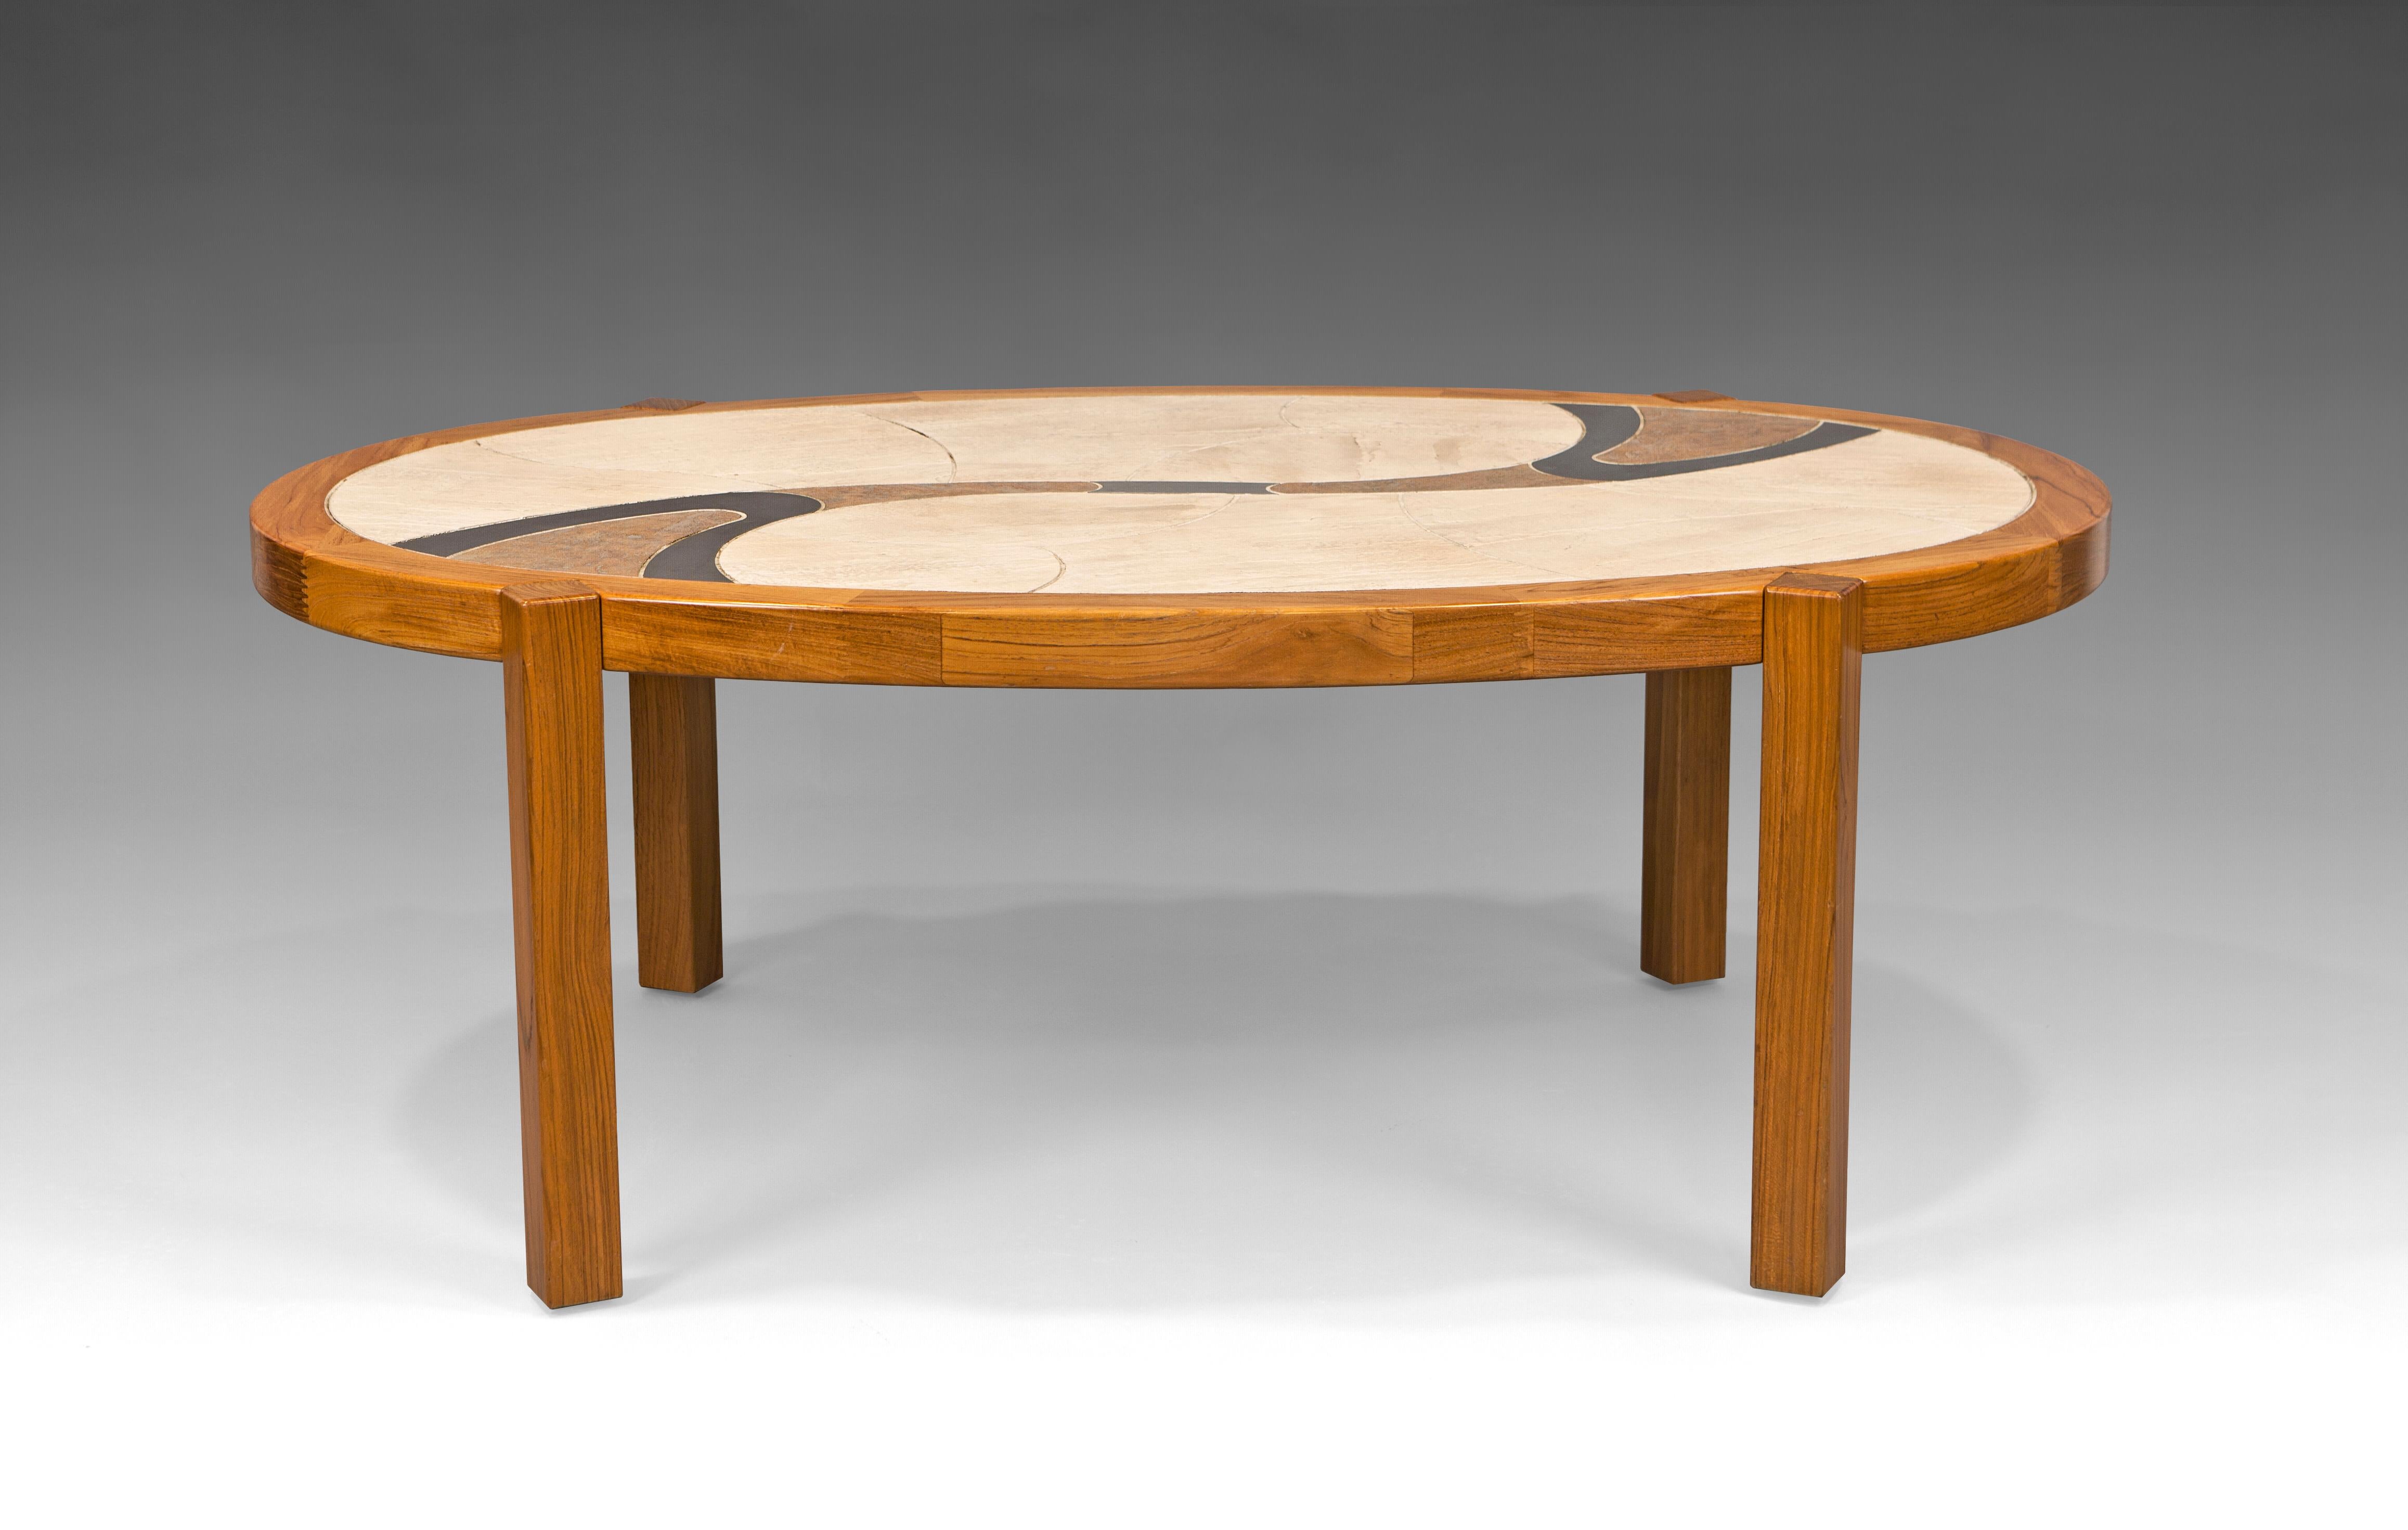 table basse ''Arizona'' par Haslev, Danemark, 1990

Table de café, de cocktail ou de centre en bois de chêne, de forme ovale, avec des carreaux de céramique aux tons terreux dans un motif organique. Deux incrustations métallisées confèrent à la